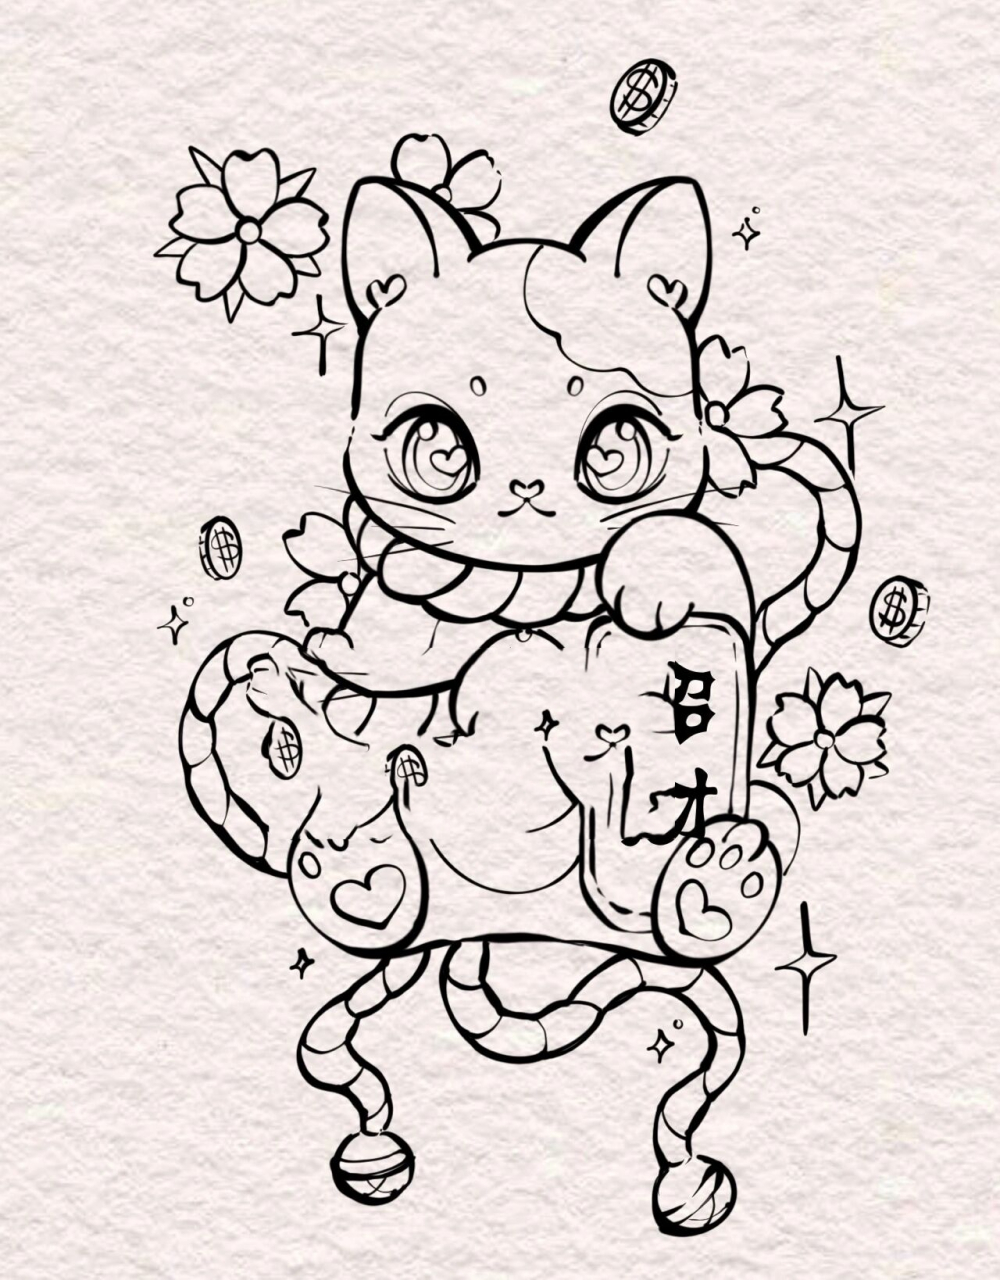 招财猫纹身手稿 客稿 可爱招财猫纹身   日式招财猫纹身